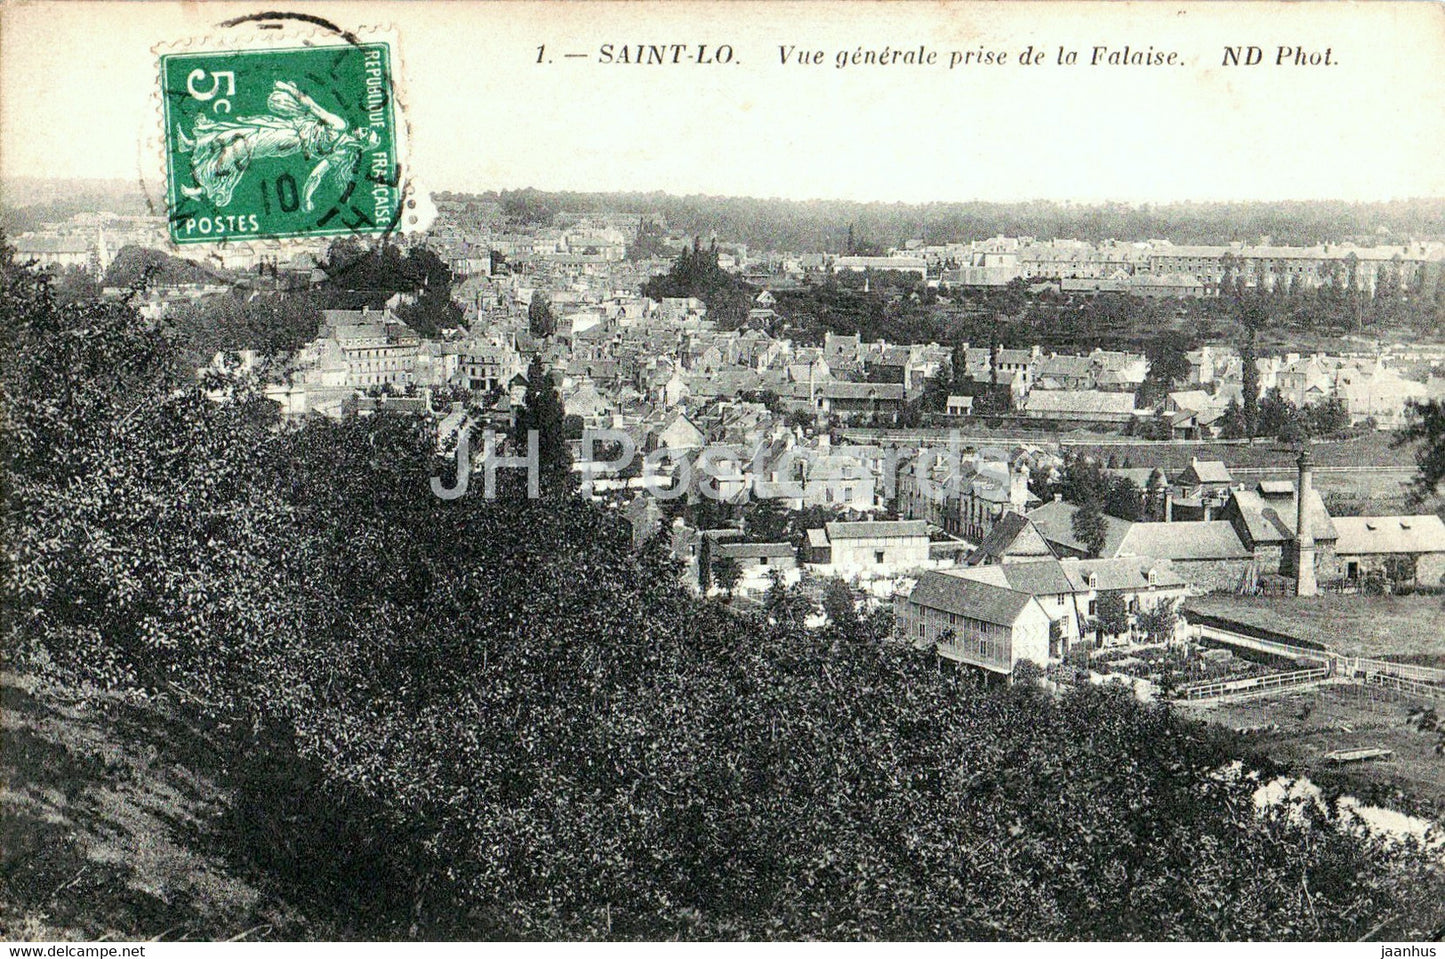 Saint Lo - Vue Generale prise de la Falaise - 1 . old postcard - 1910 - France - used - JH Postcards